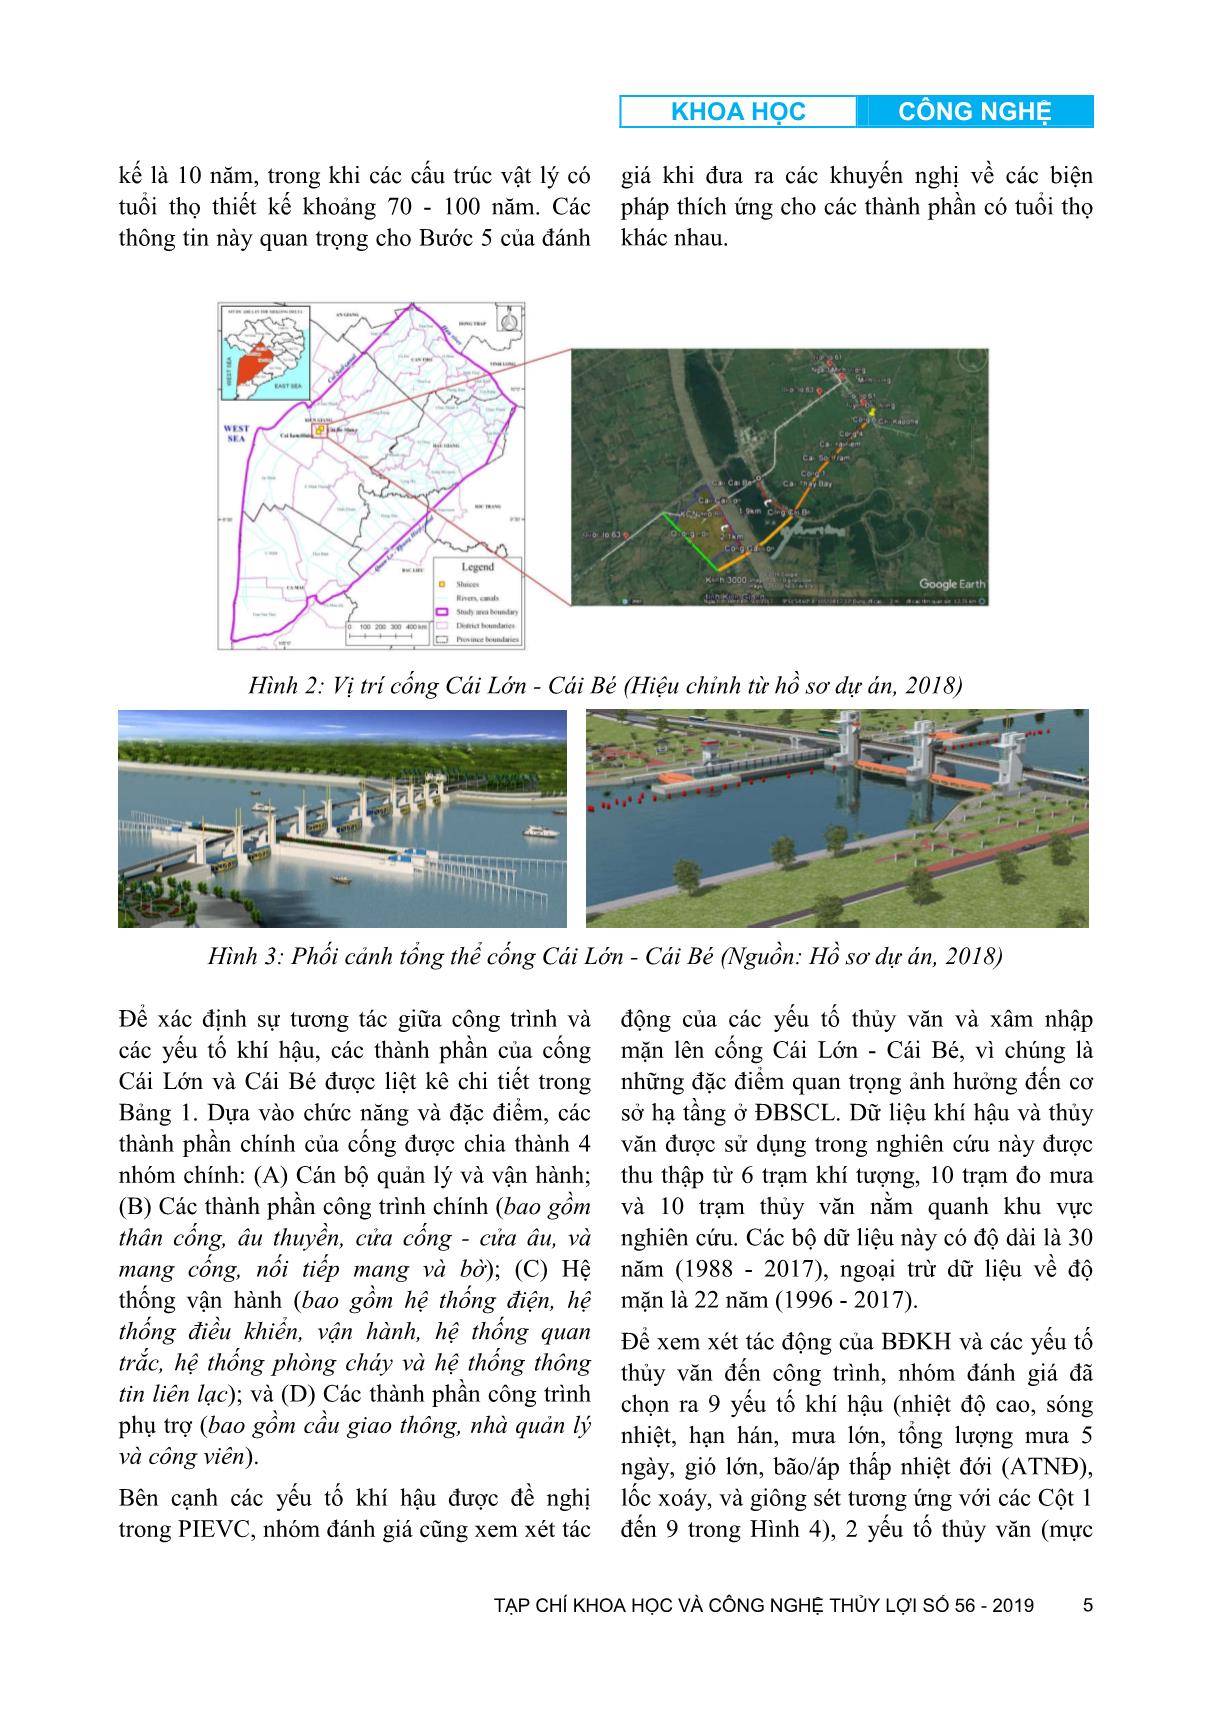 Đánh giá rủi ro khí hậu đối với cơ sở hạ tầng: Áp dụng cho hệ thống cống Cái Lớn - Cái Bé ở đồng bằng sông Cửu Long trang 5